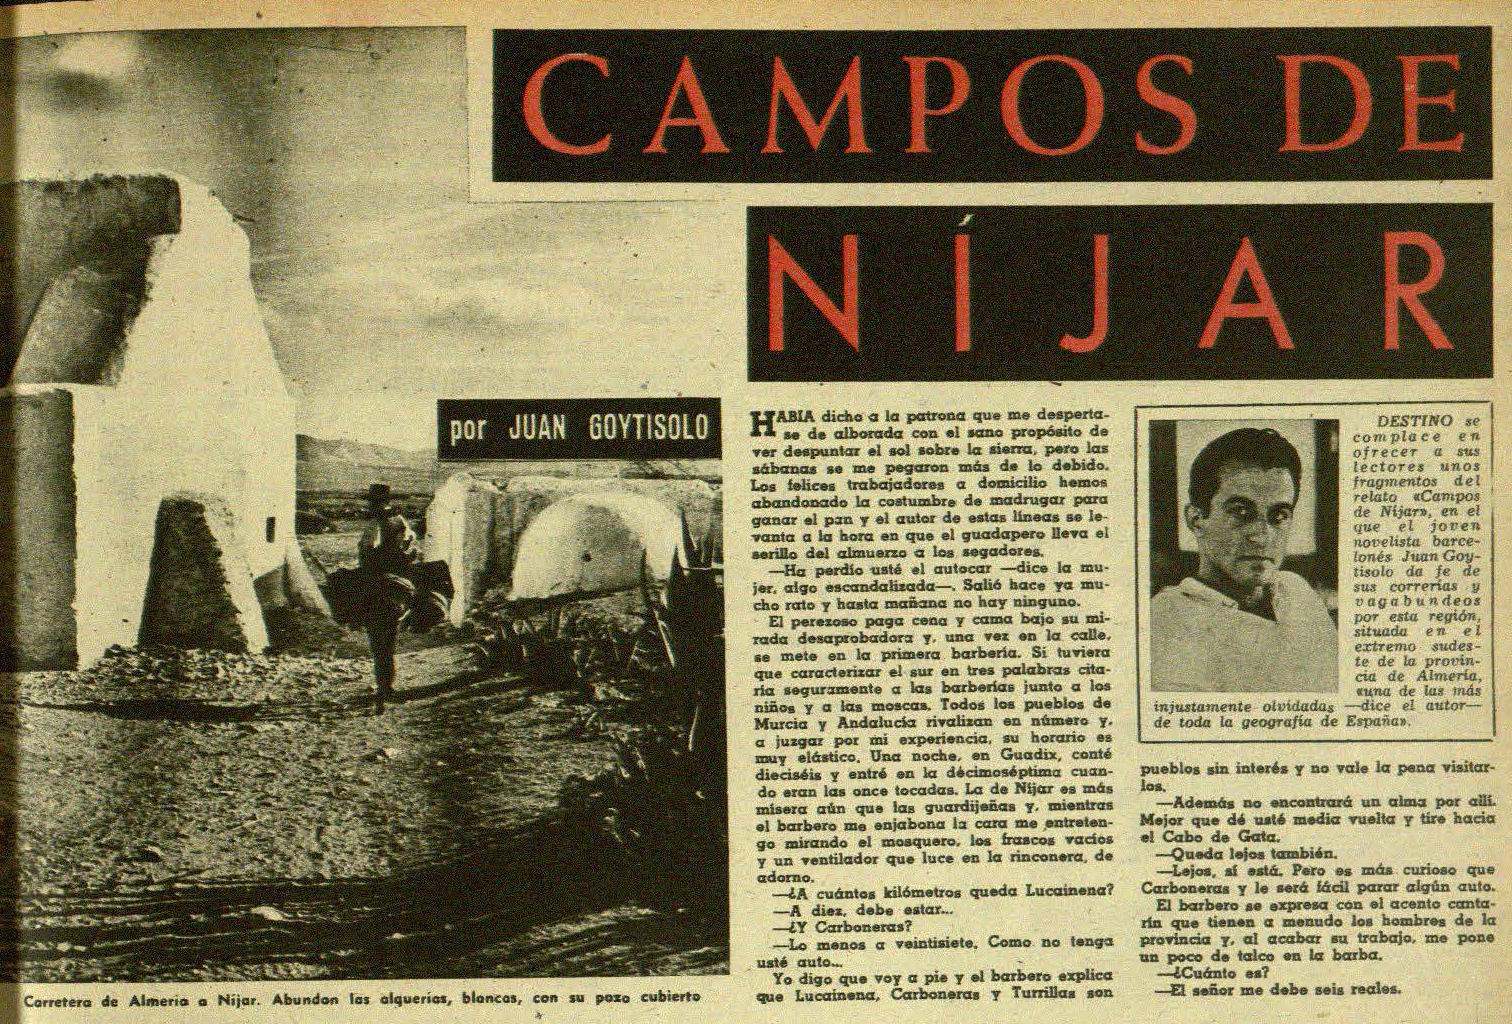 Precuela de Campos de Nijar en Destino 9 de enero de 1960